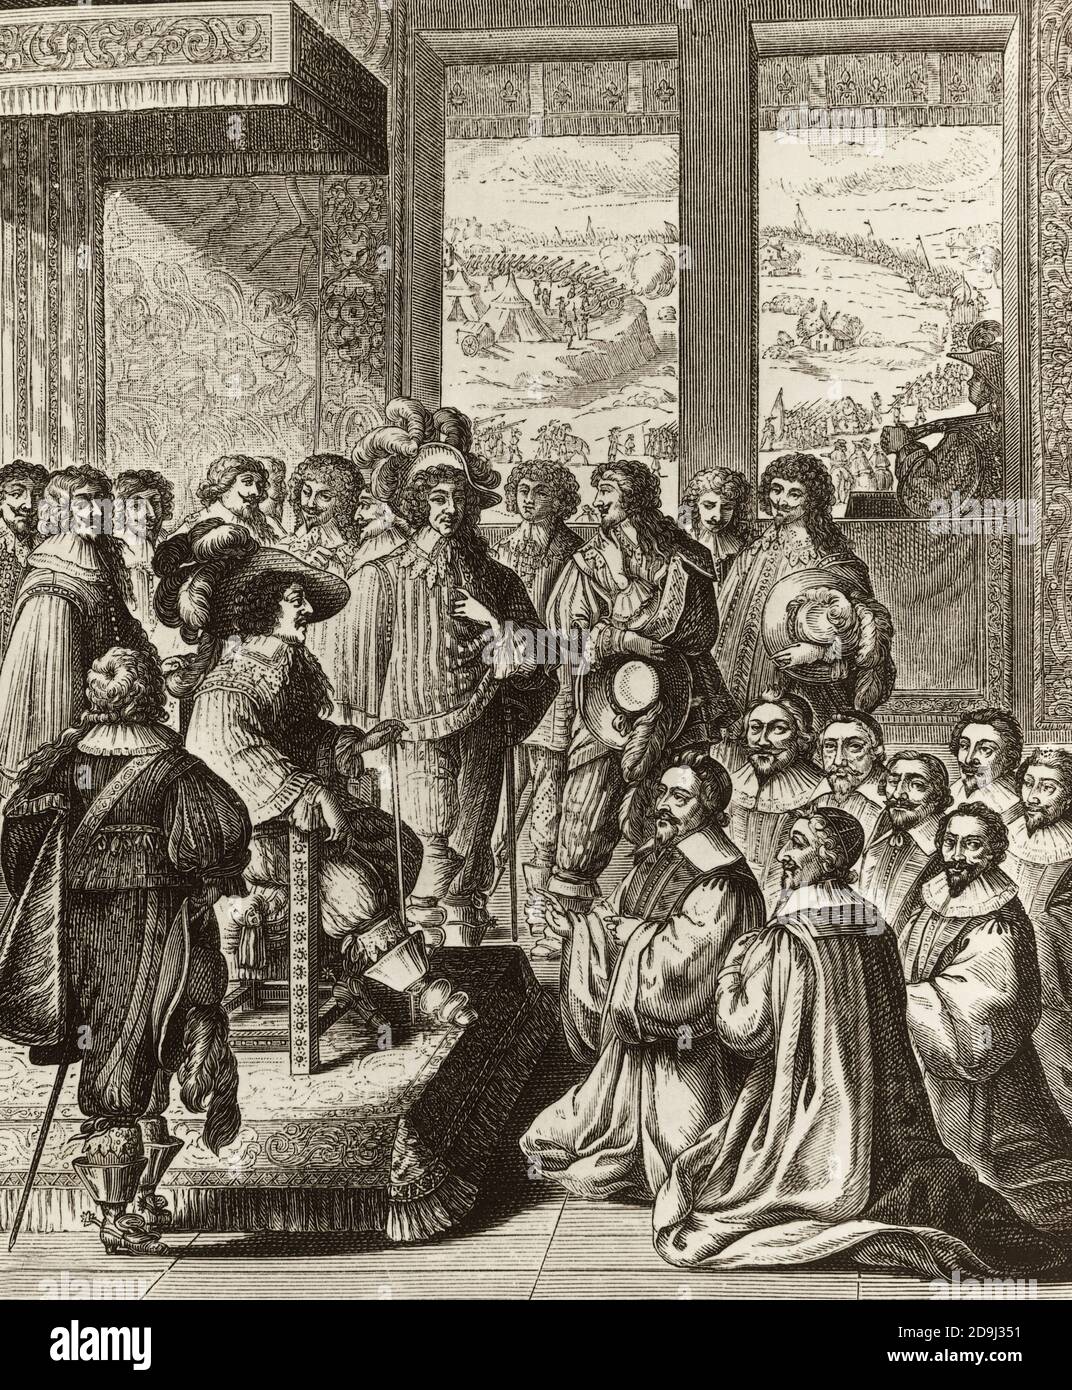 Luis XIII, sentado en un trono, rodeado de nobles, recibe el prévot des marchand y los echevins de París después de la captura de la Rochelle - Foto de stock